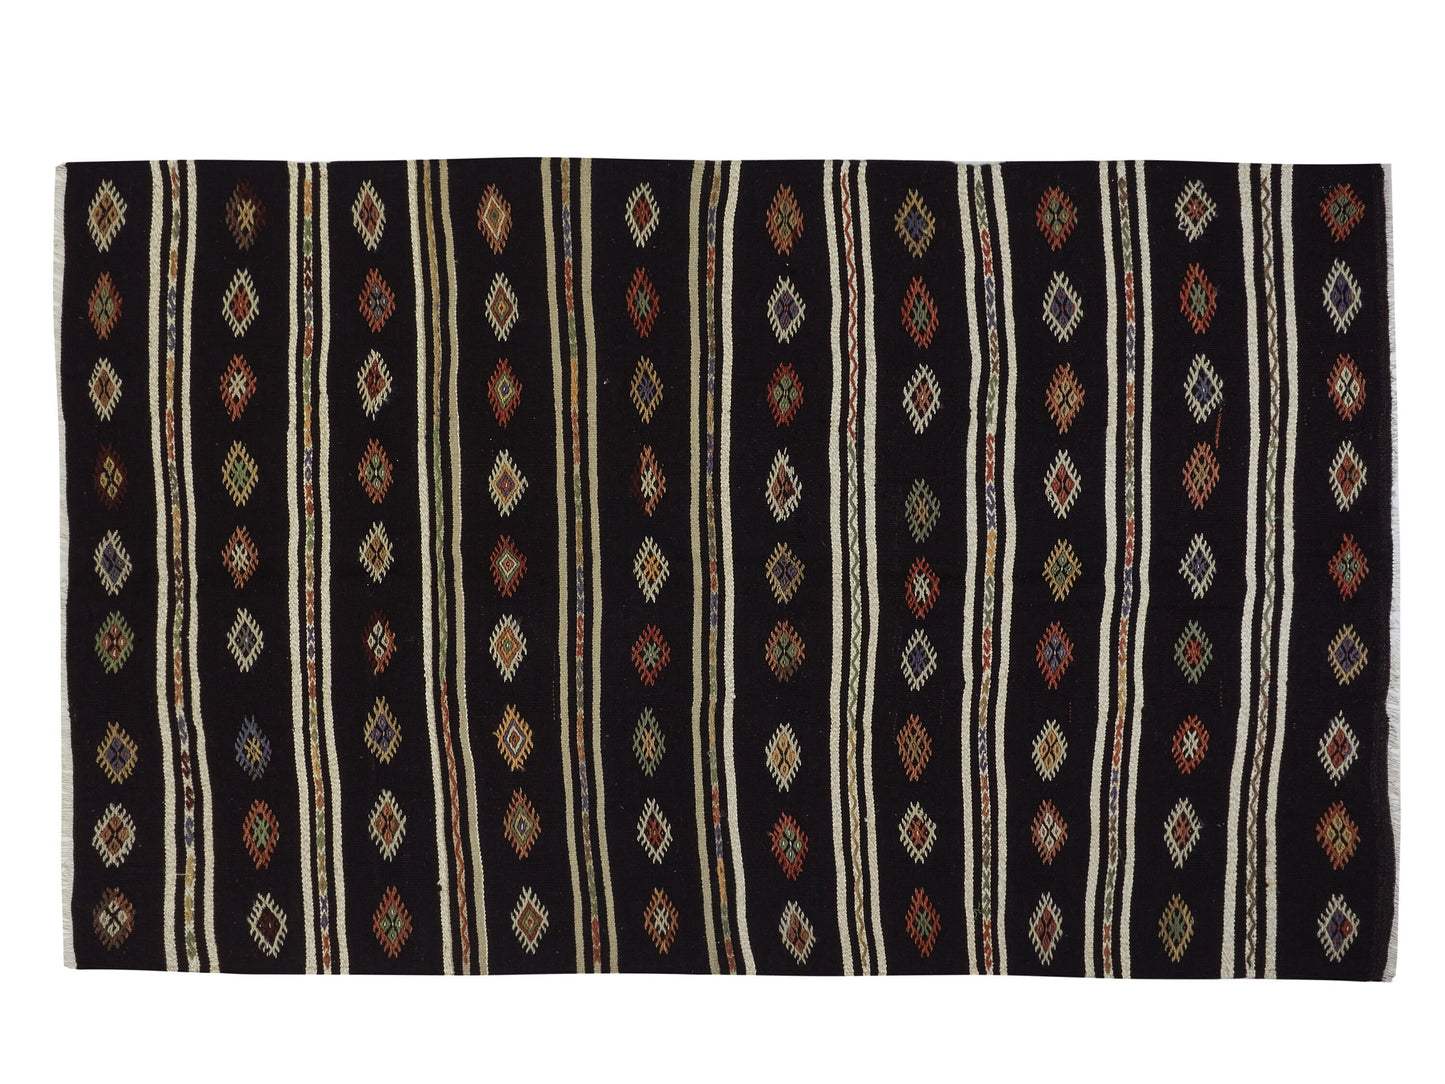 Turkish Kilim, Rustic Vintage Kilim, Kilim Rug 6x9, Handmade Primitive Kilim Rug, Living Room Rug, Turkish Kilim Rug, Area Rug, 10518